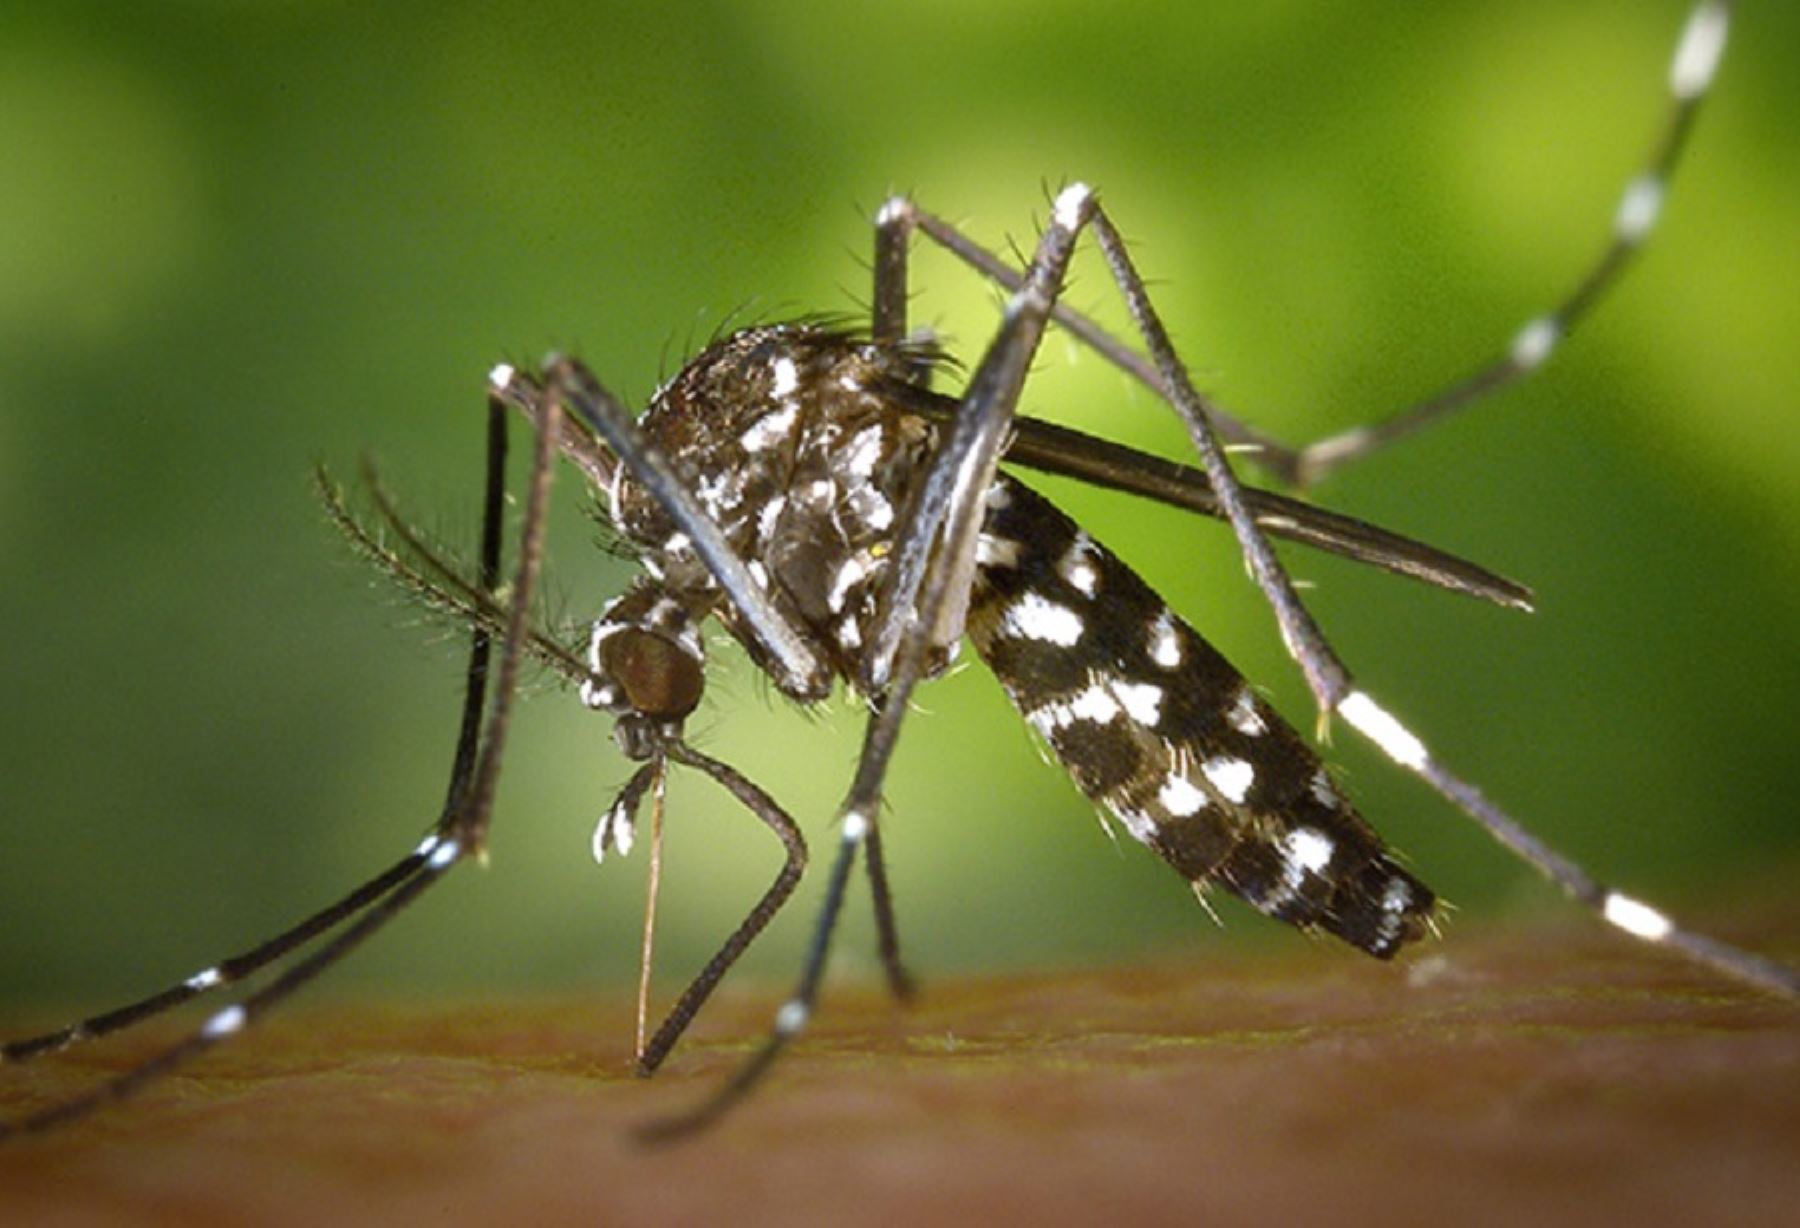 El dengue es una enfermedad infecciosa que se transmite por la hembra del zancudo o mosquito Aedes aegypti. Foto: internet/medios.